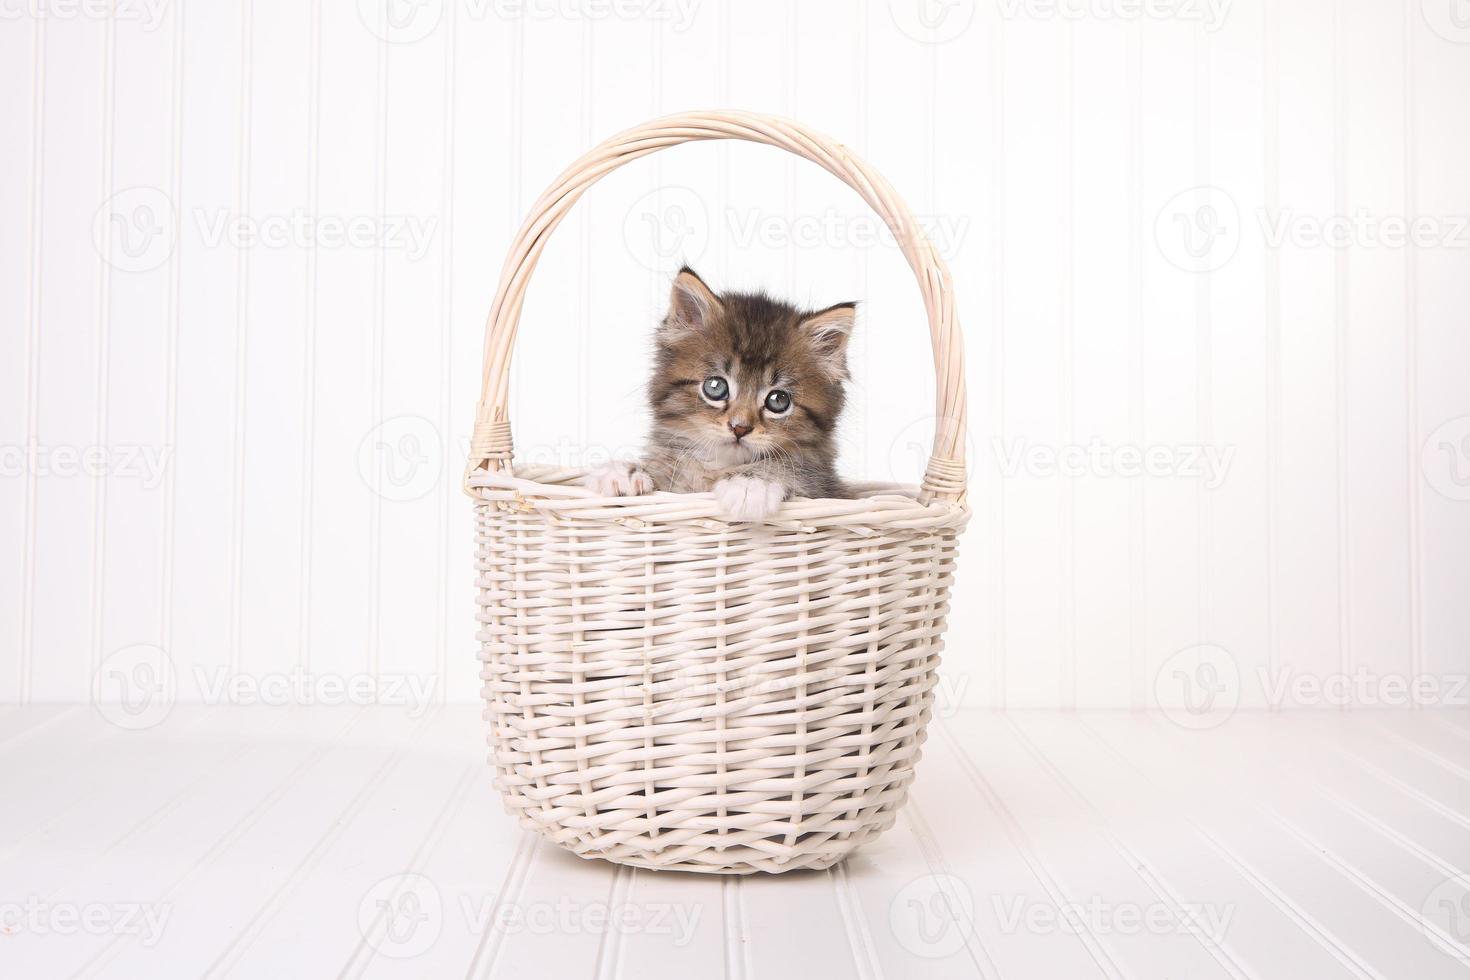 gatinho maincoon com olhos grandes na cesta foto